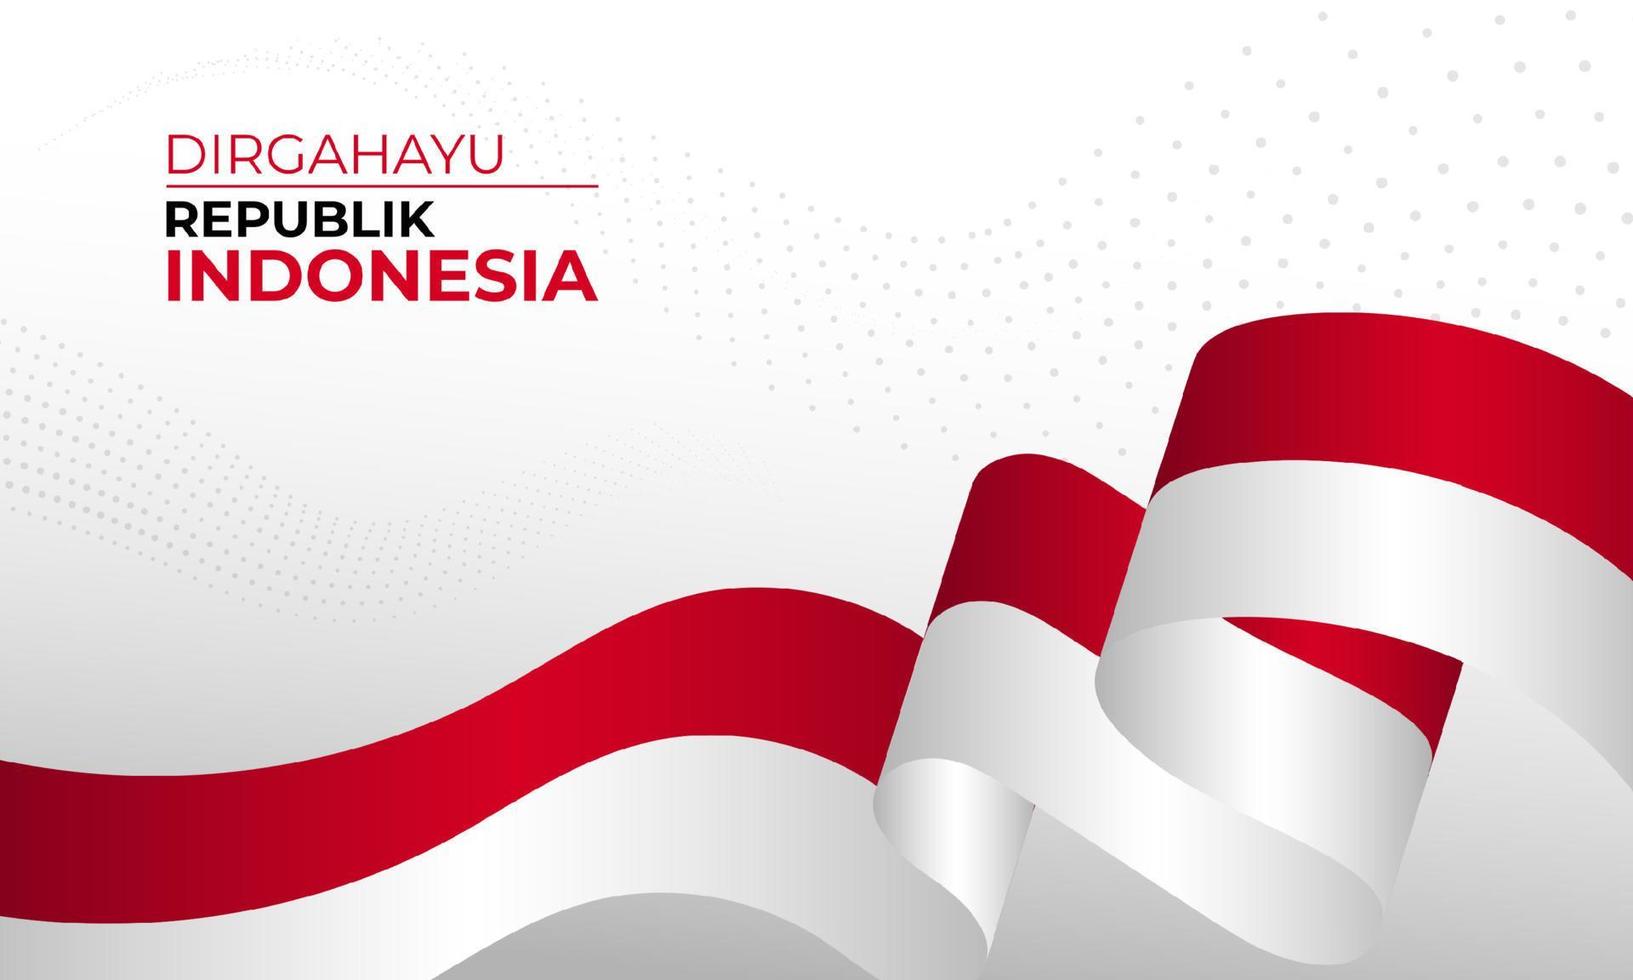 felice giorno dell'indipendenza dell'indonesia sfondo banner design. vettore